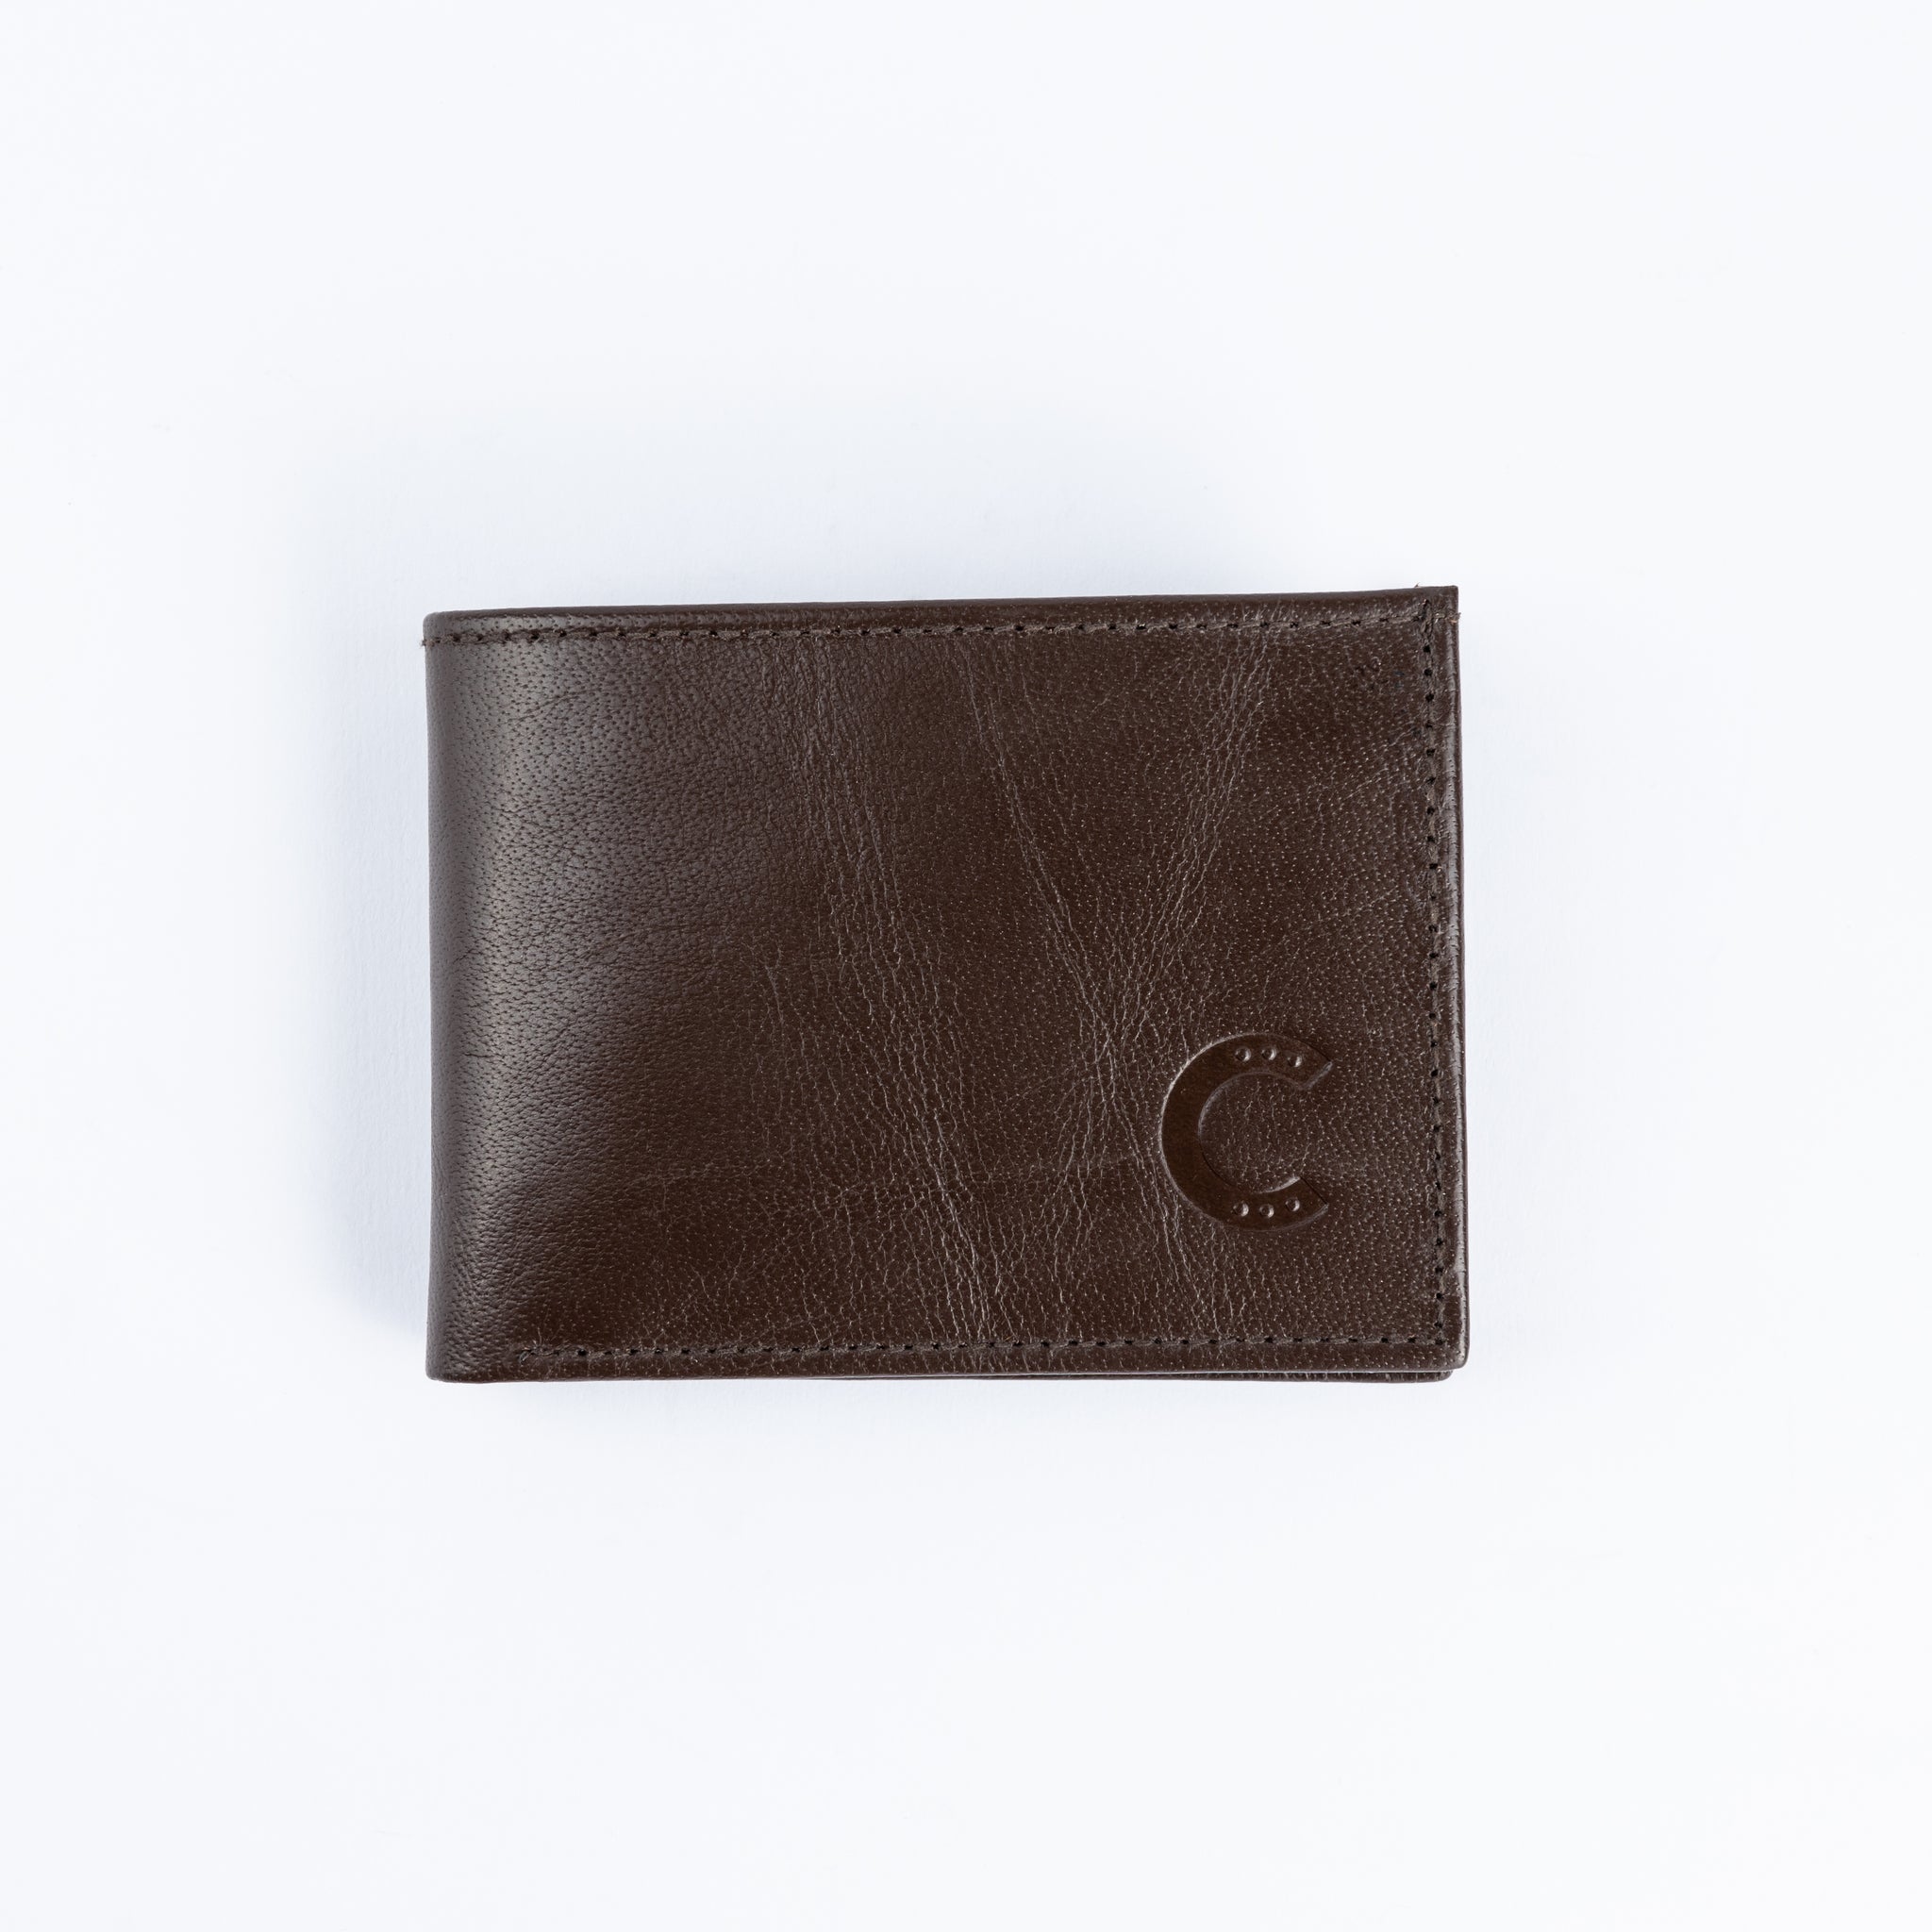 Leather Wallet - Dark Brown - Hatchill